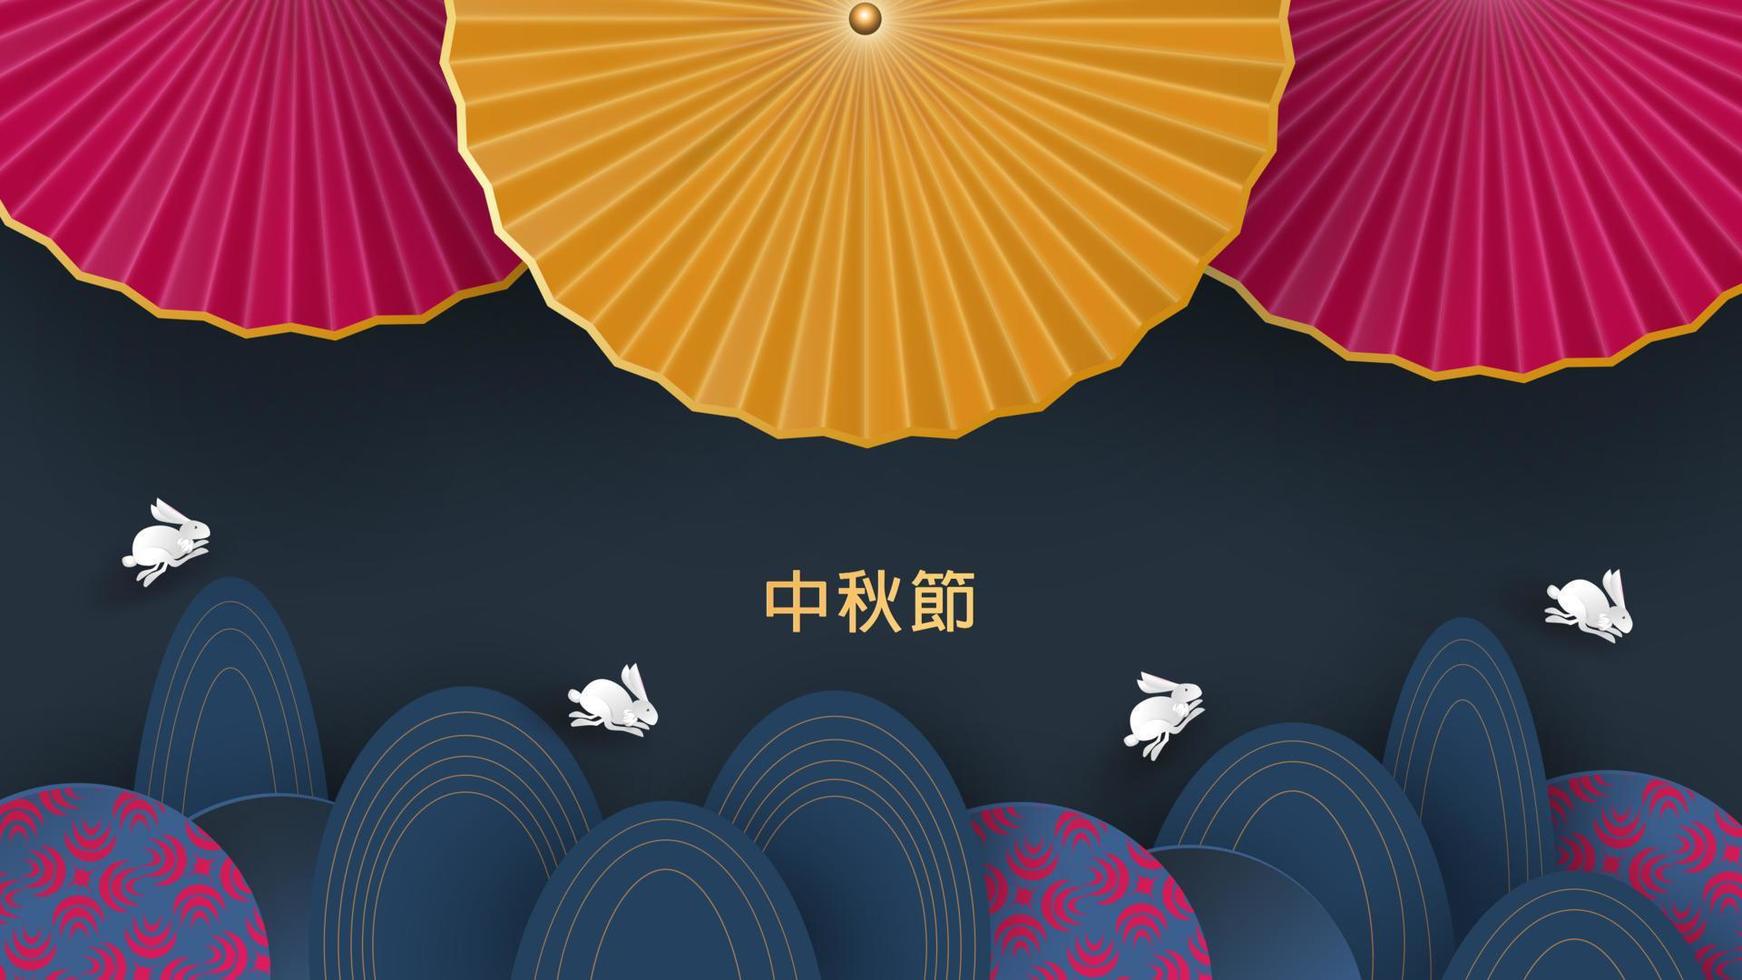 Bannerdesign mit traditionellen chinesischen Kreismustern, die den Vollmond darstellen, chinesischer Text Happy Mid Autumn, Gold auf Dunkelblau. Vektor flachen Stil. Platz für Ihren Text.